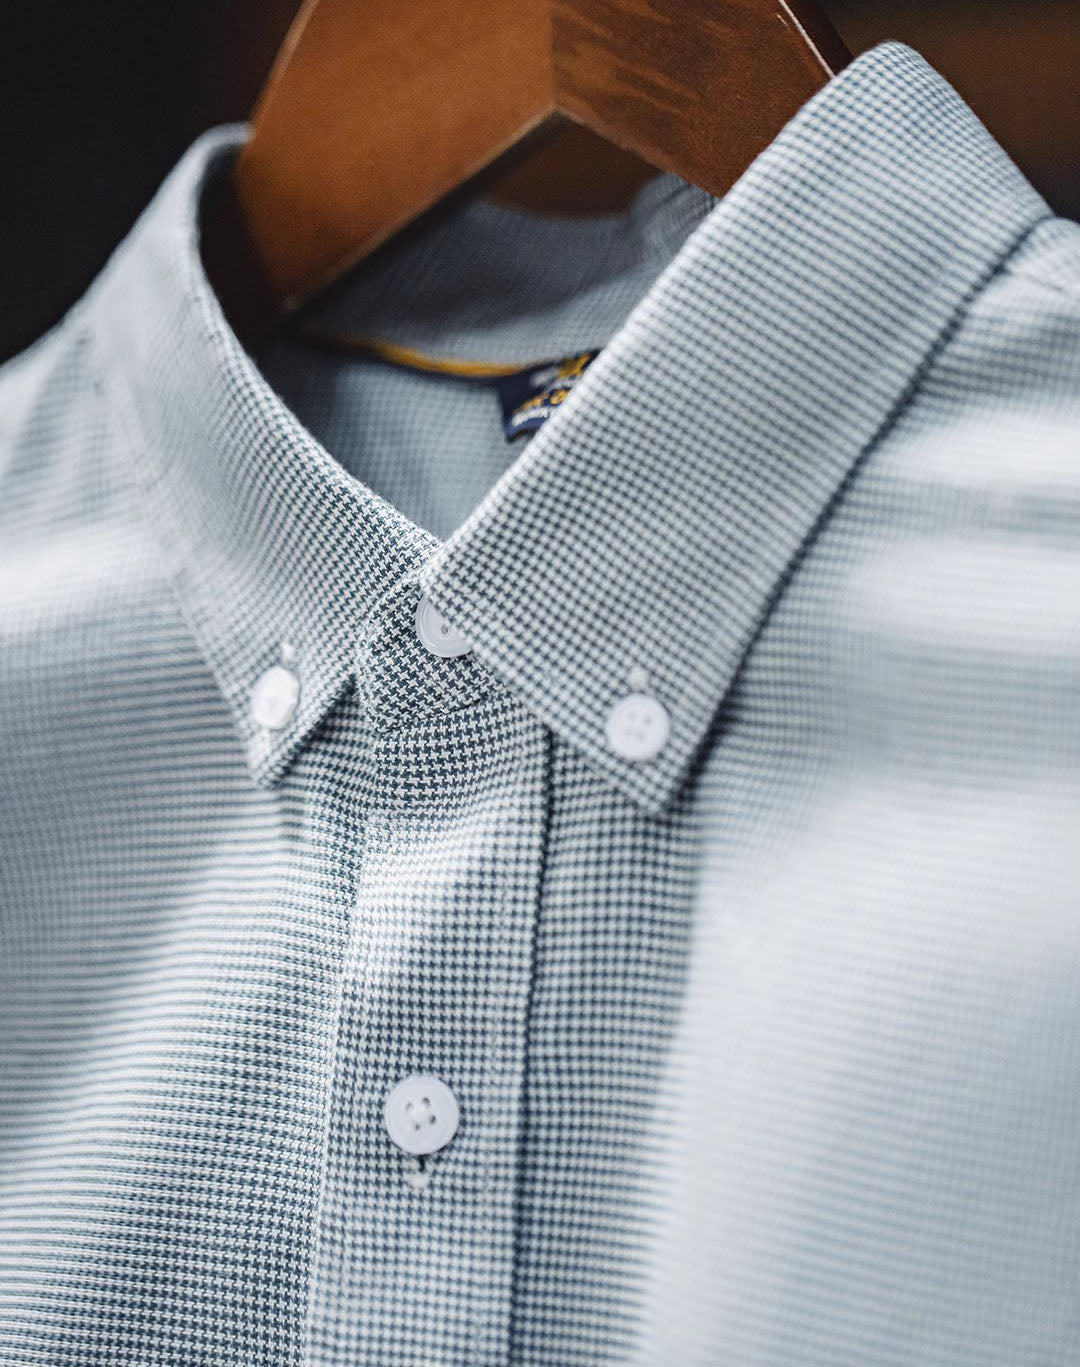 American Casual Button Cotton Commuter Business Plaid Men's Shirt